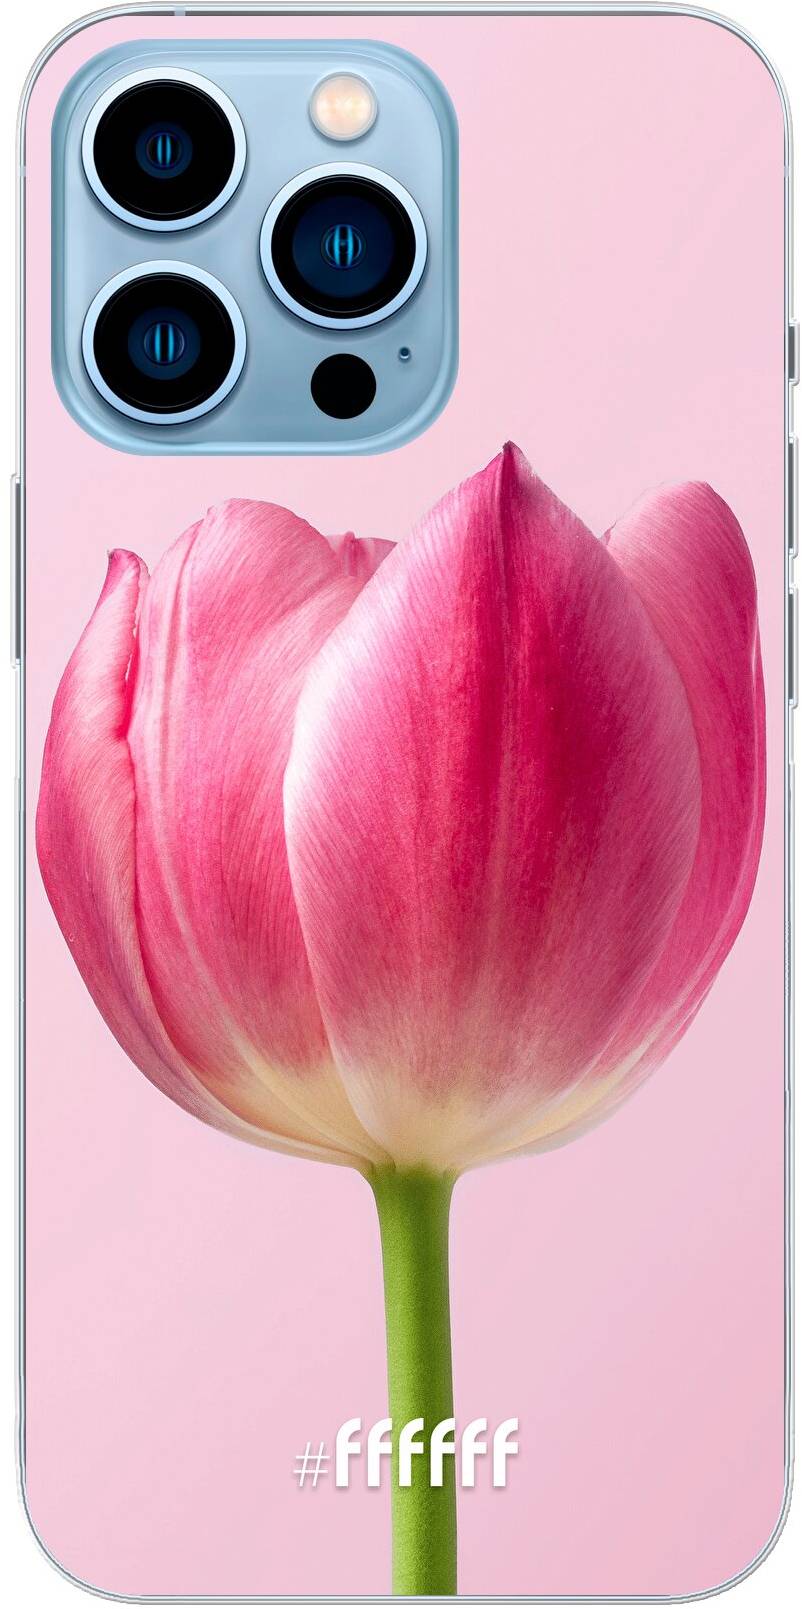 Pink Tulip iPhone 13 Pro Max